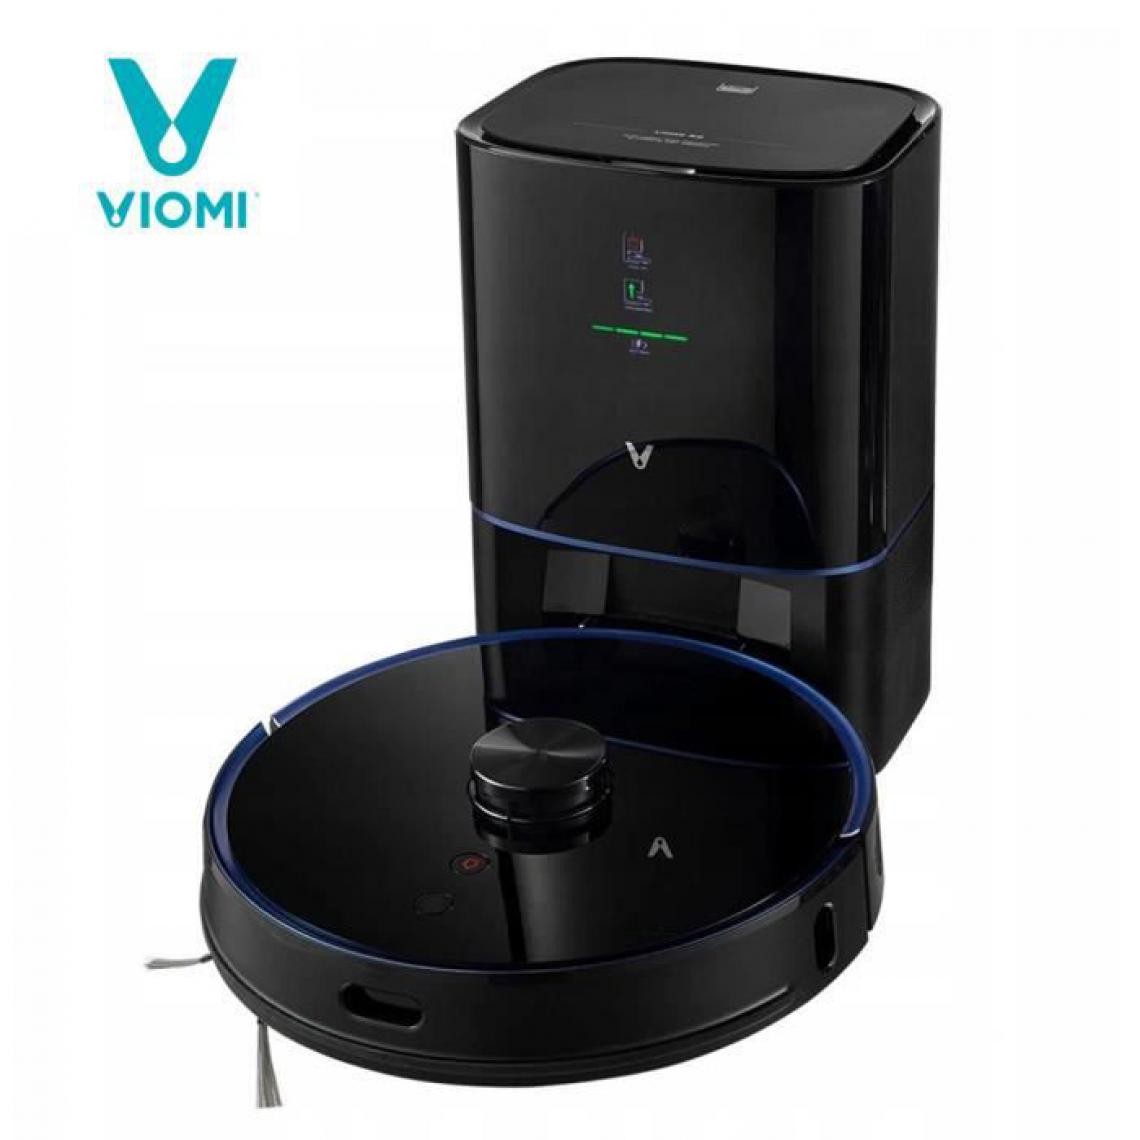 XIAOMI - Aspirateur robot Viomi S9 - Noir - Aspirateur robot